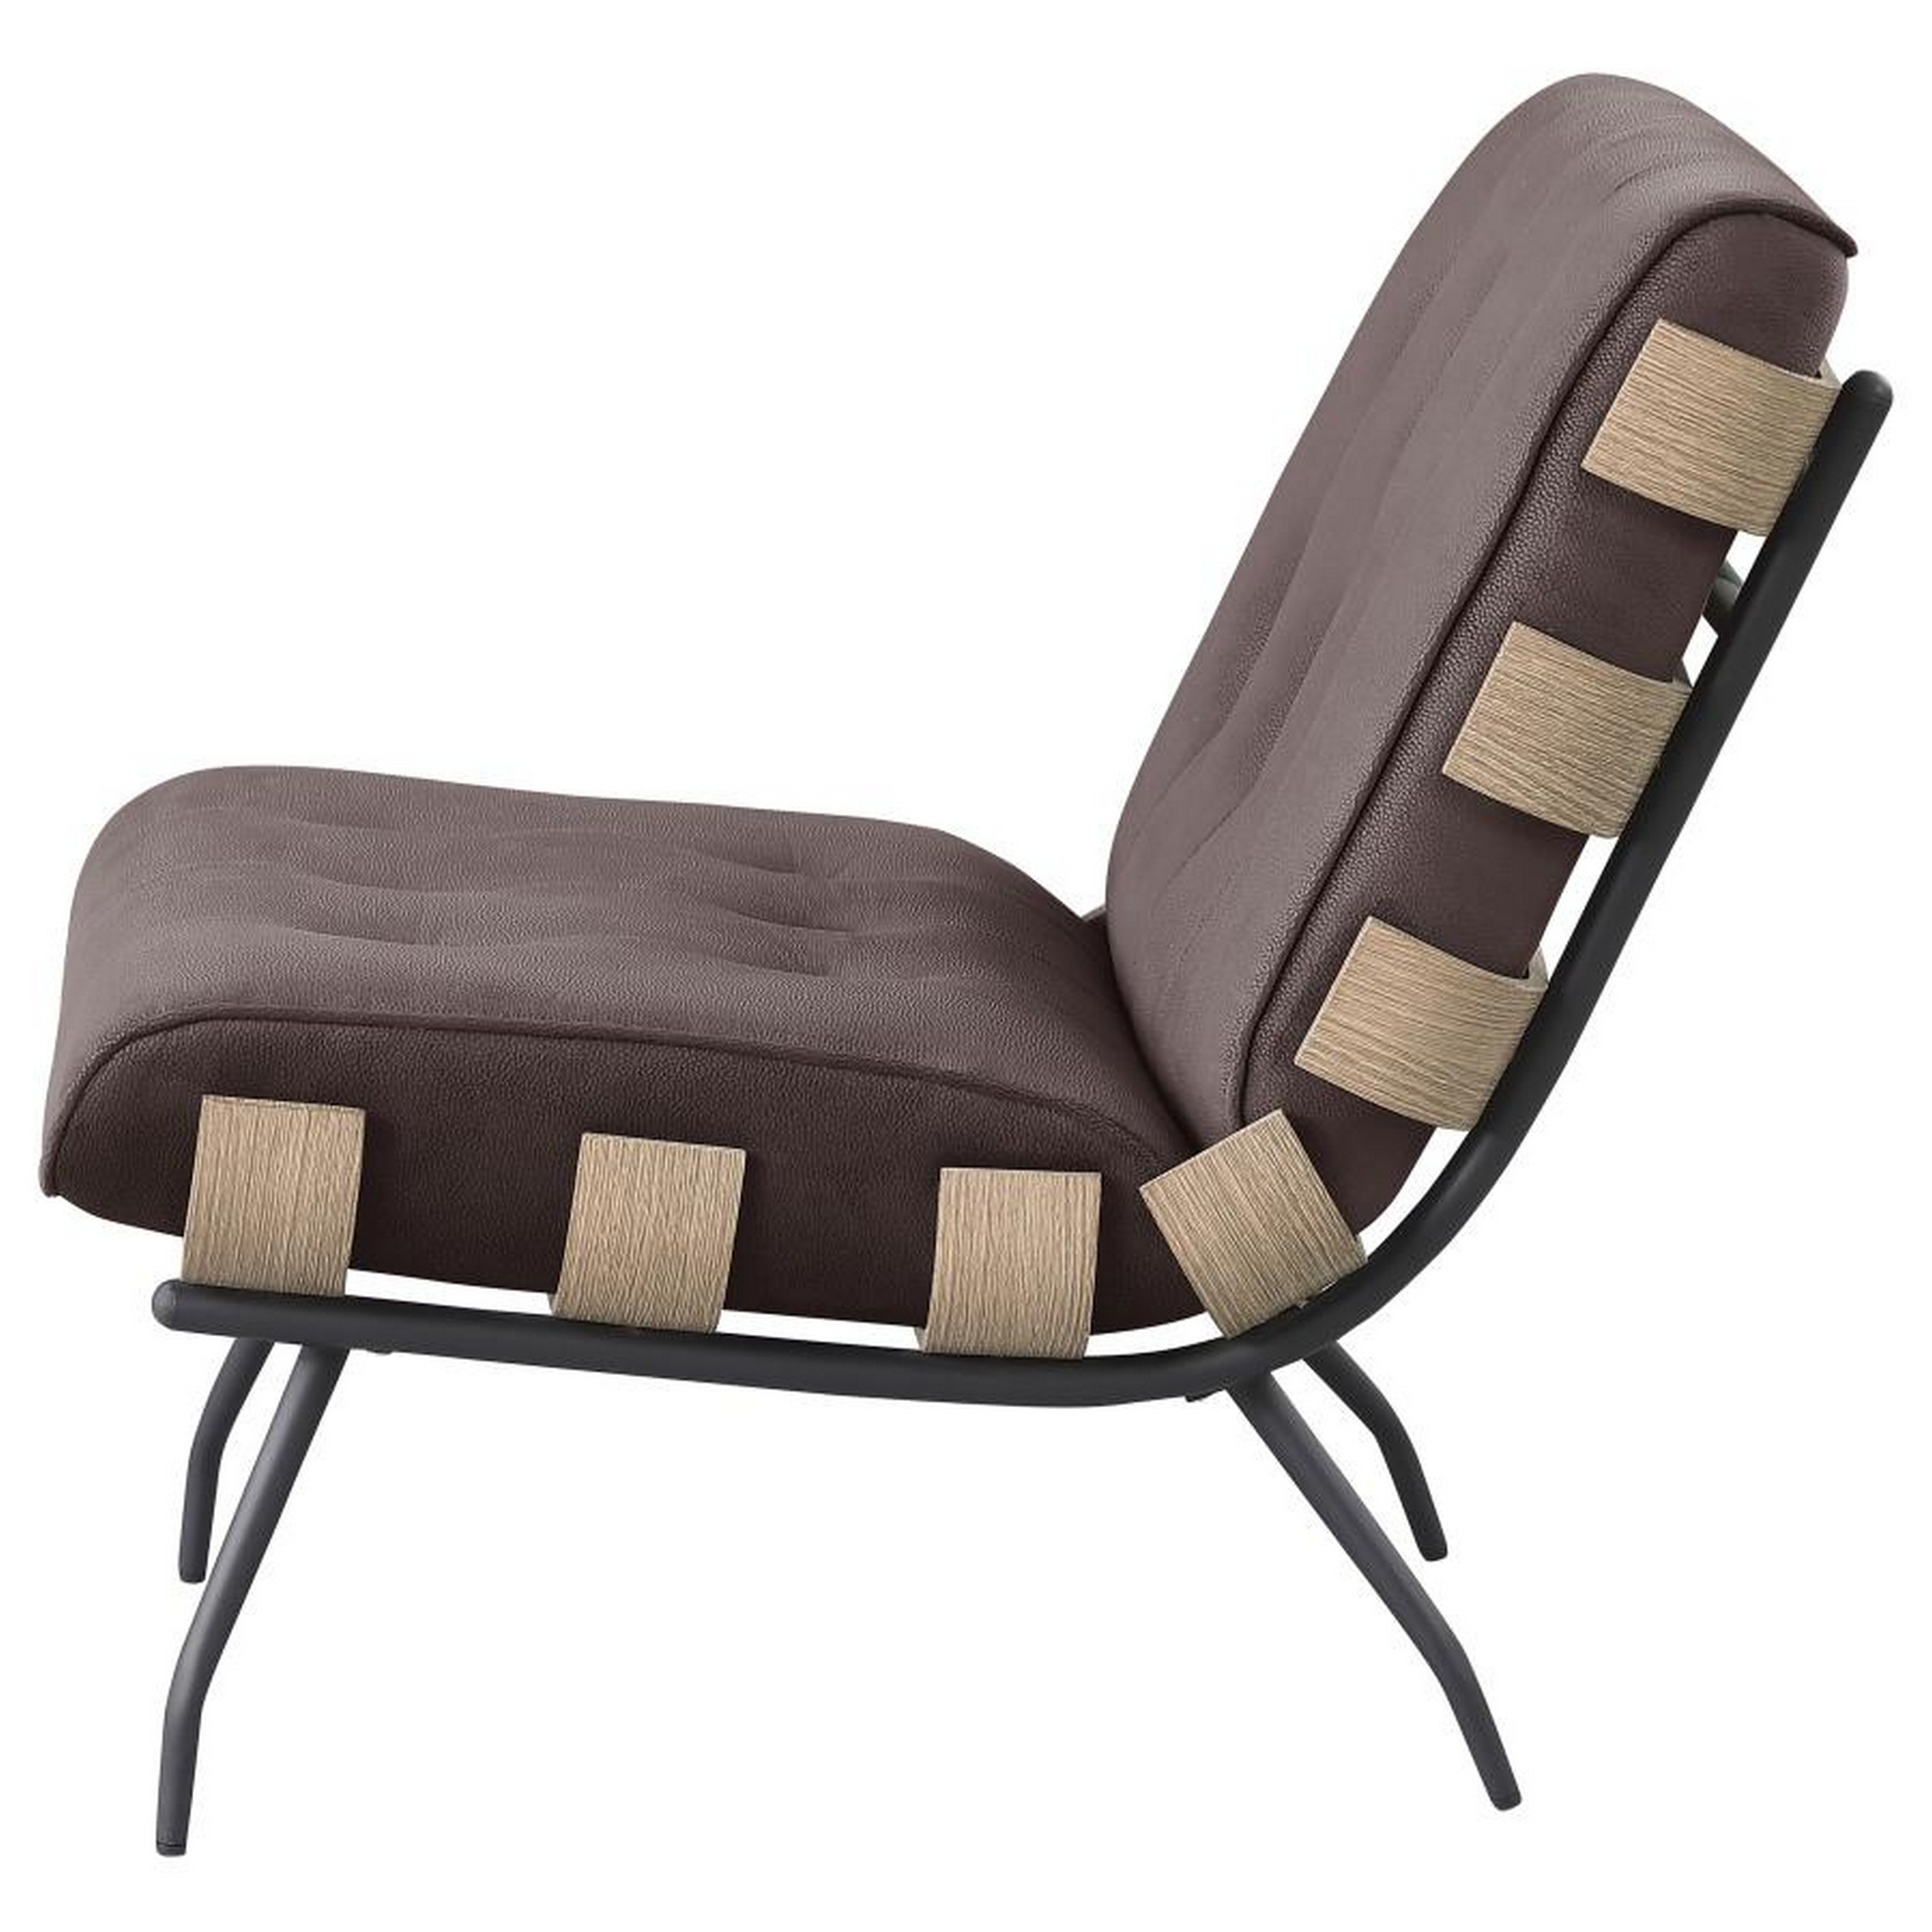 Nain 35 Inch Accent Chair, Oversized Cushion Tufted Back, Dark Brown -Saltoro Sherpi